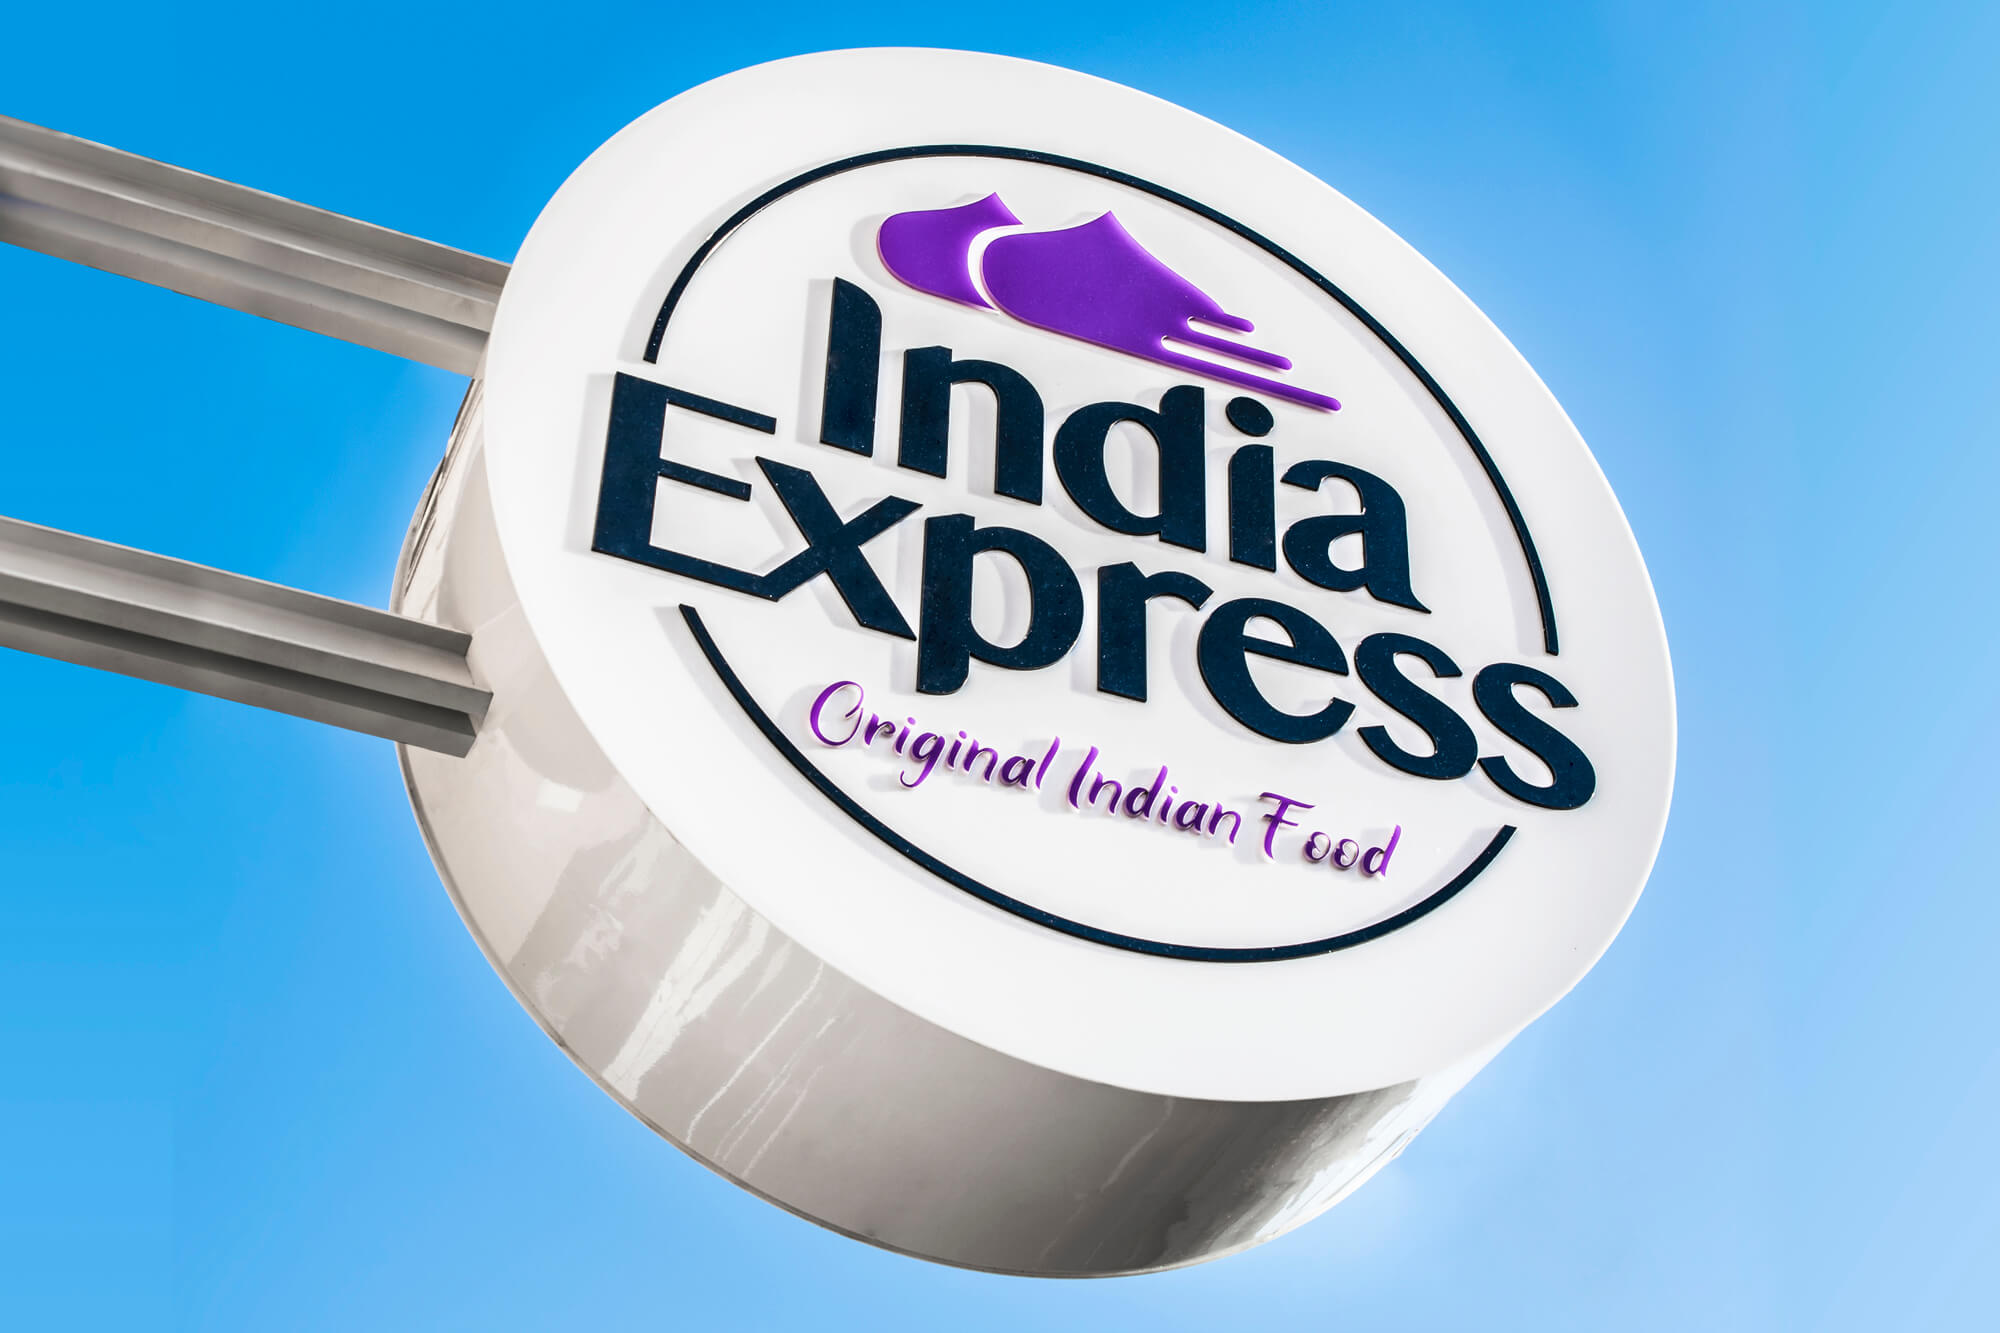 India Express - India Express - semáforo publicitario con el logotipo de la empresa colgado junto a la entrada